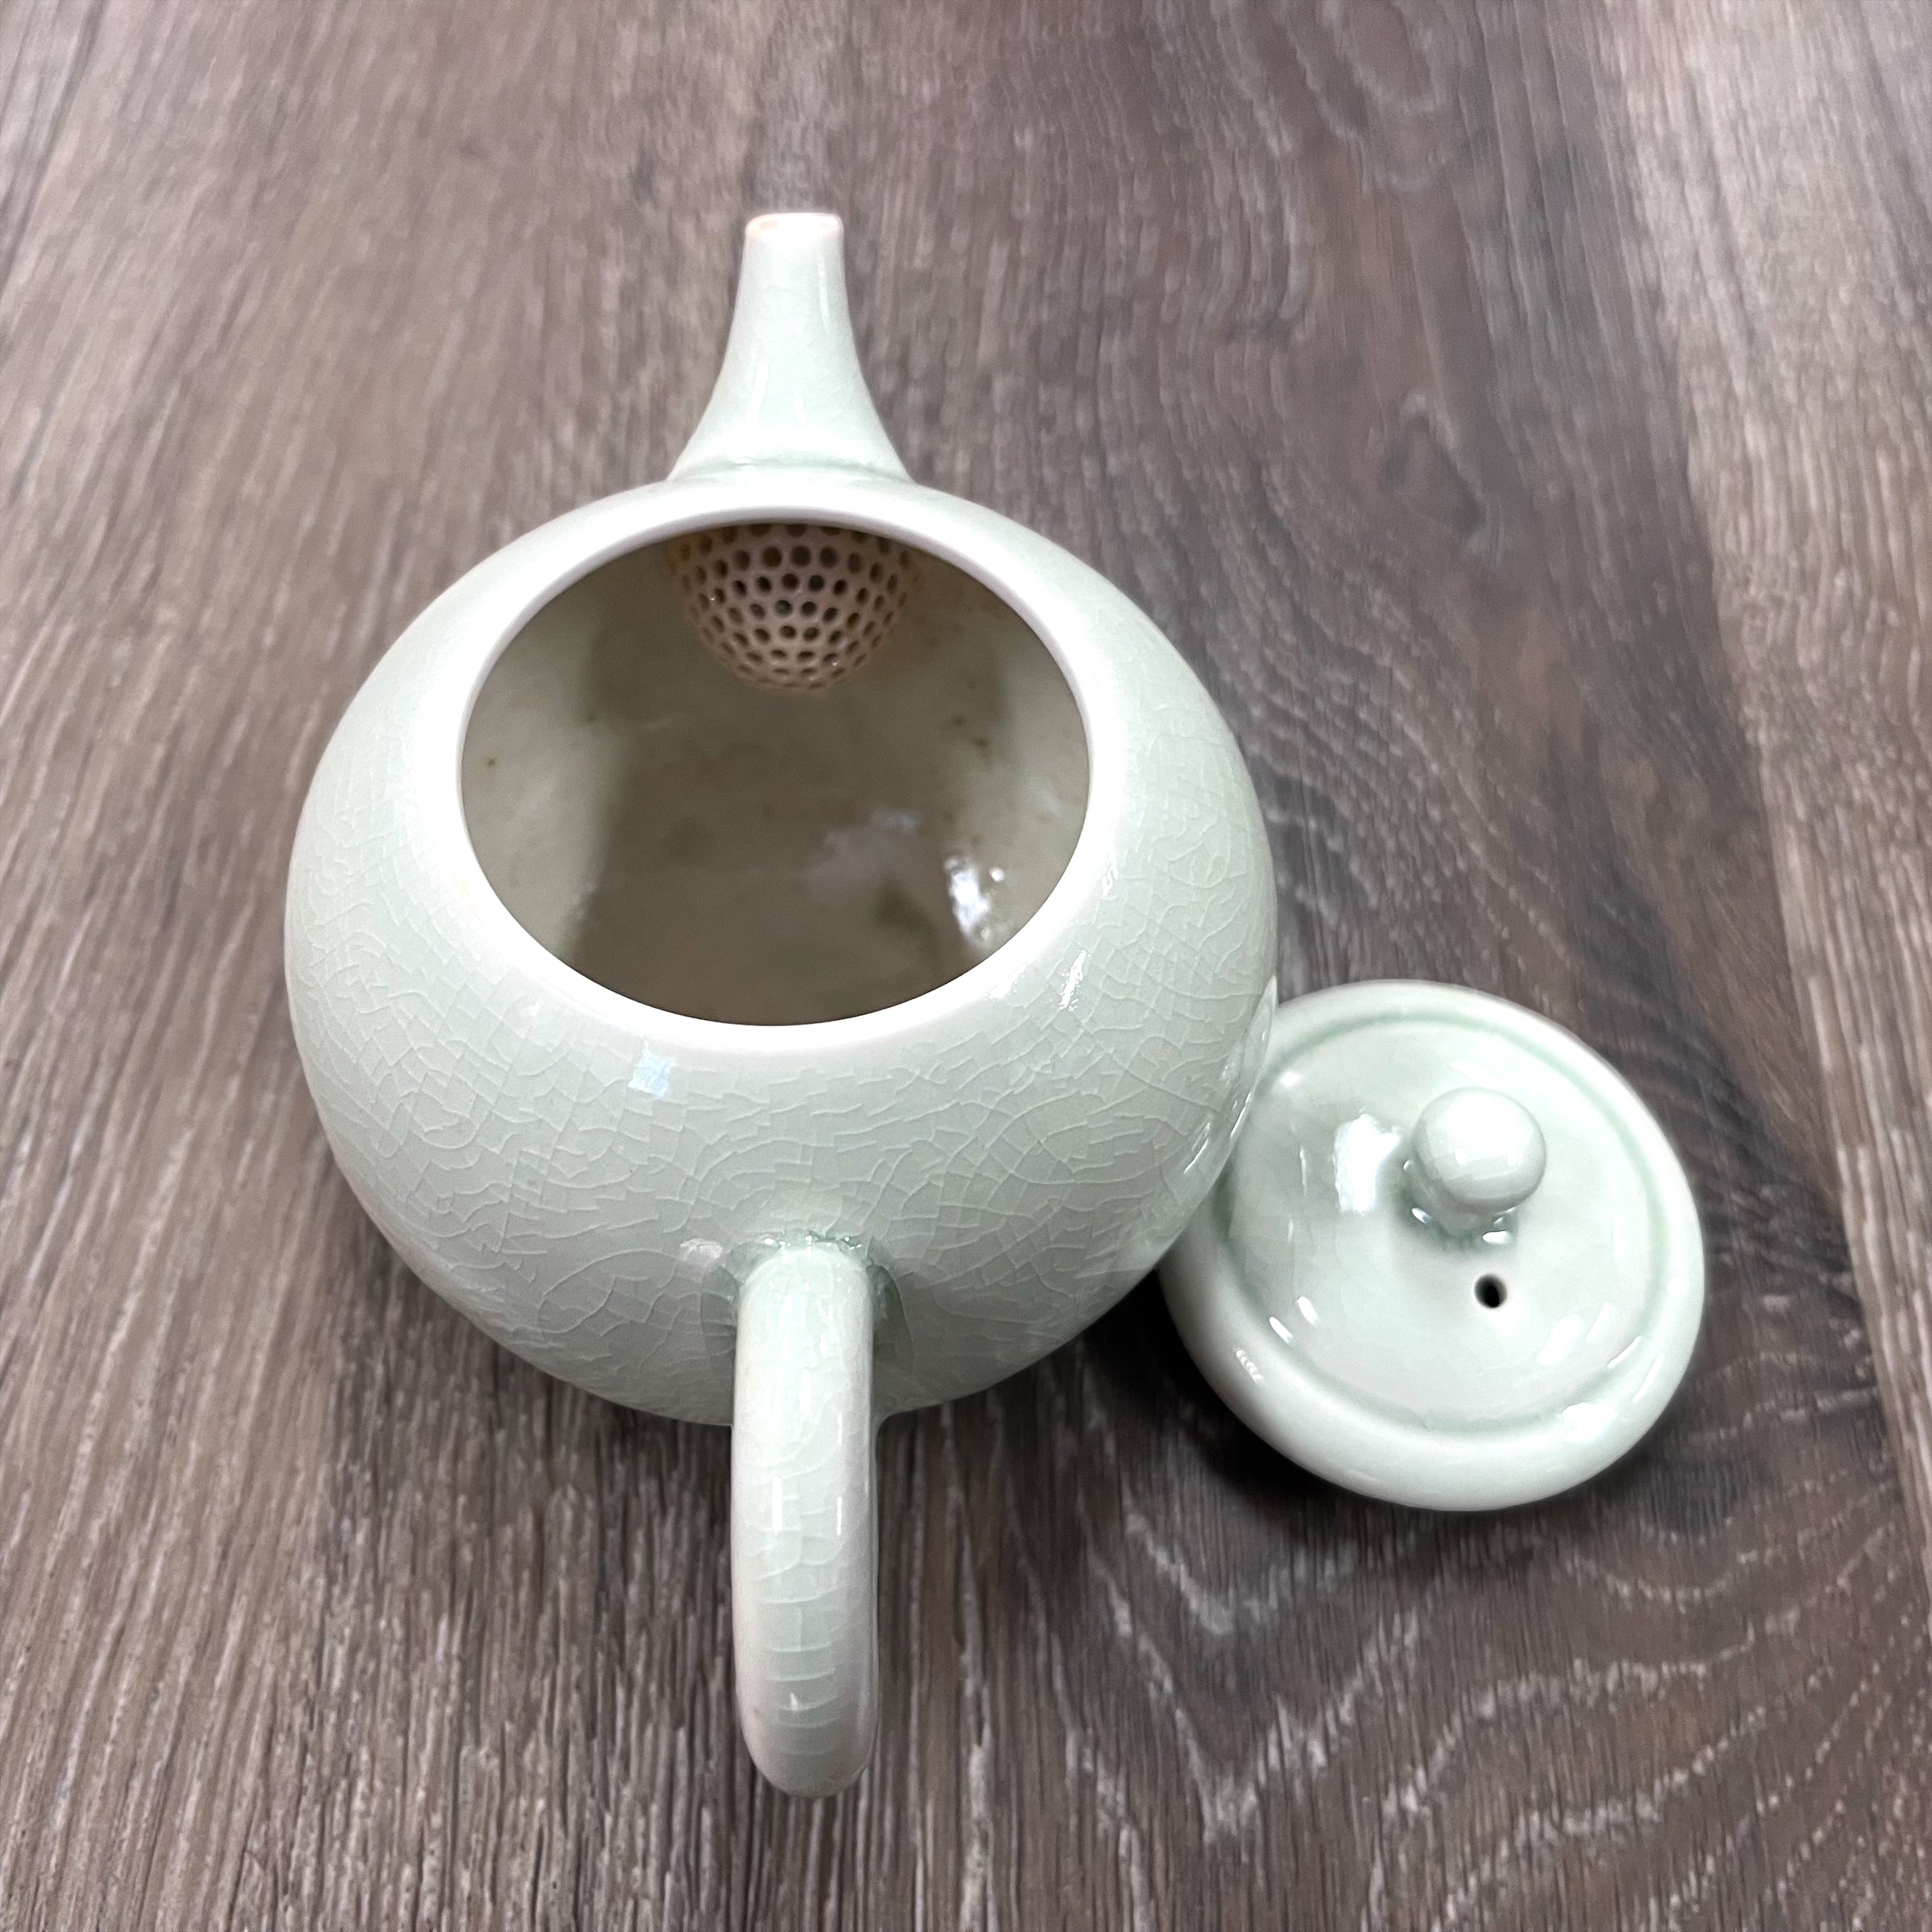 Japanese Kyusu Teapot - Sazanami